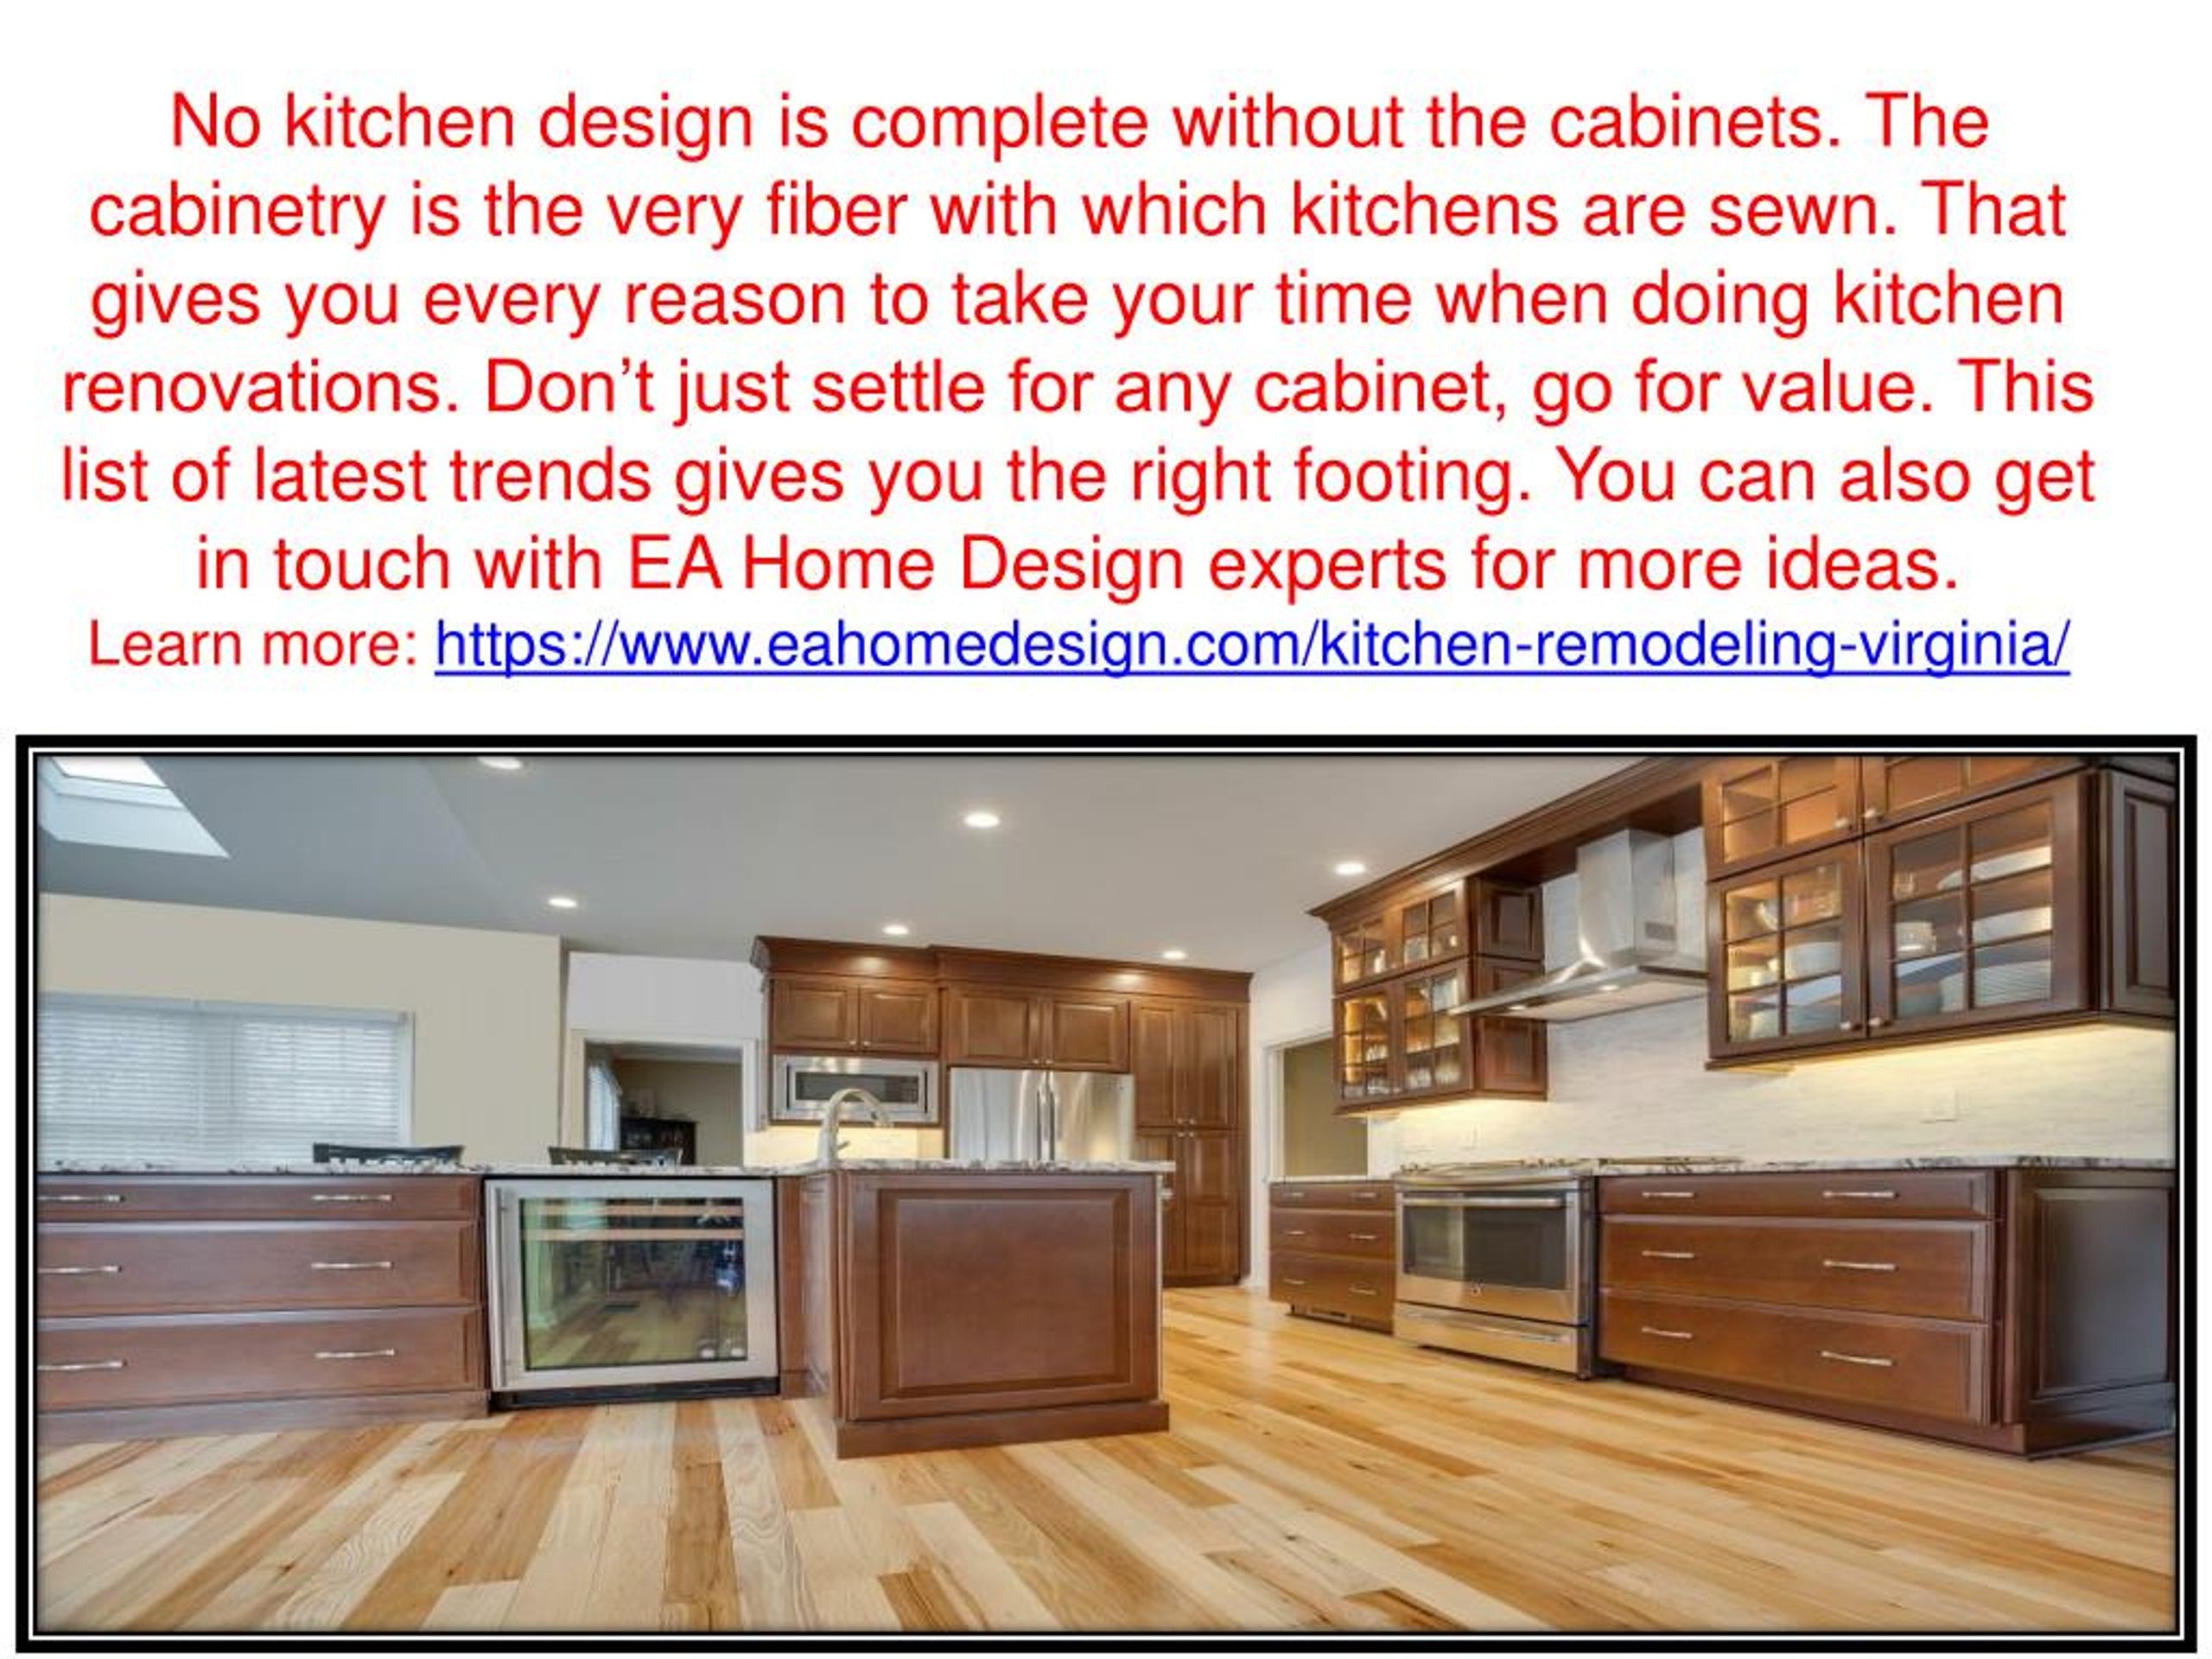 PPT - Kitchen Cabinet Design Trends in Virginia PowerPoint Presentation ...